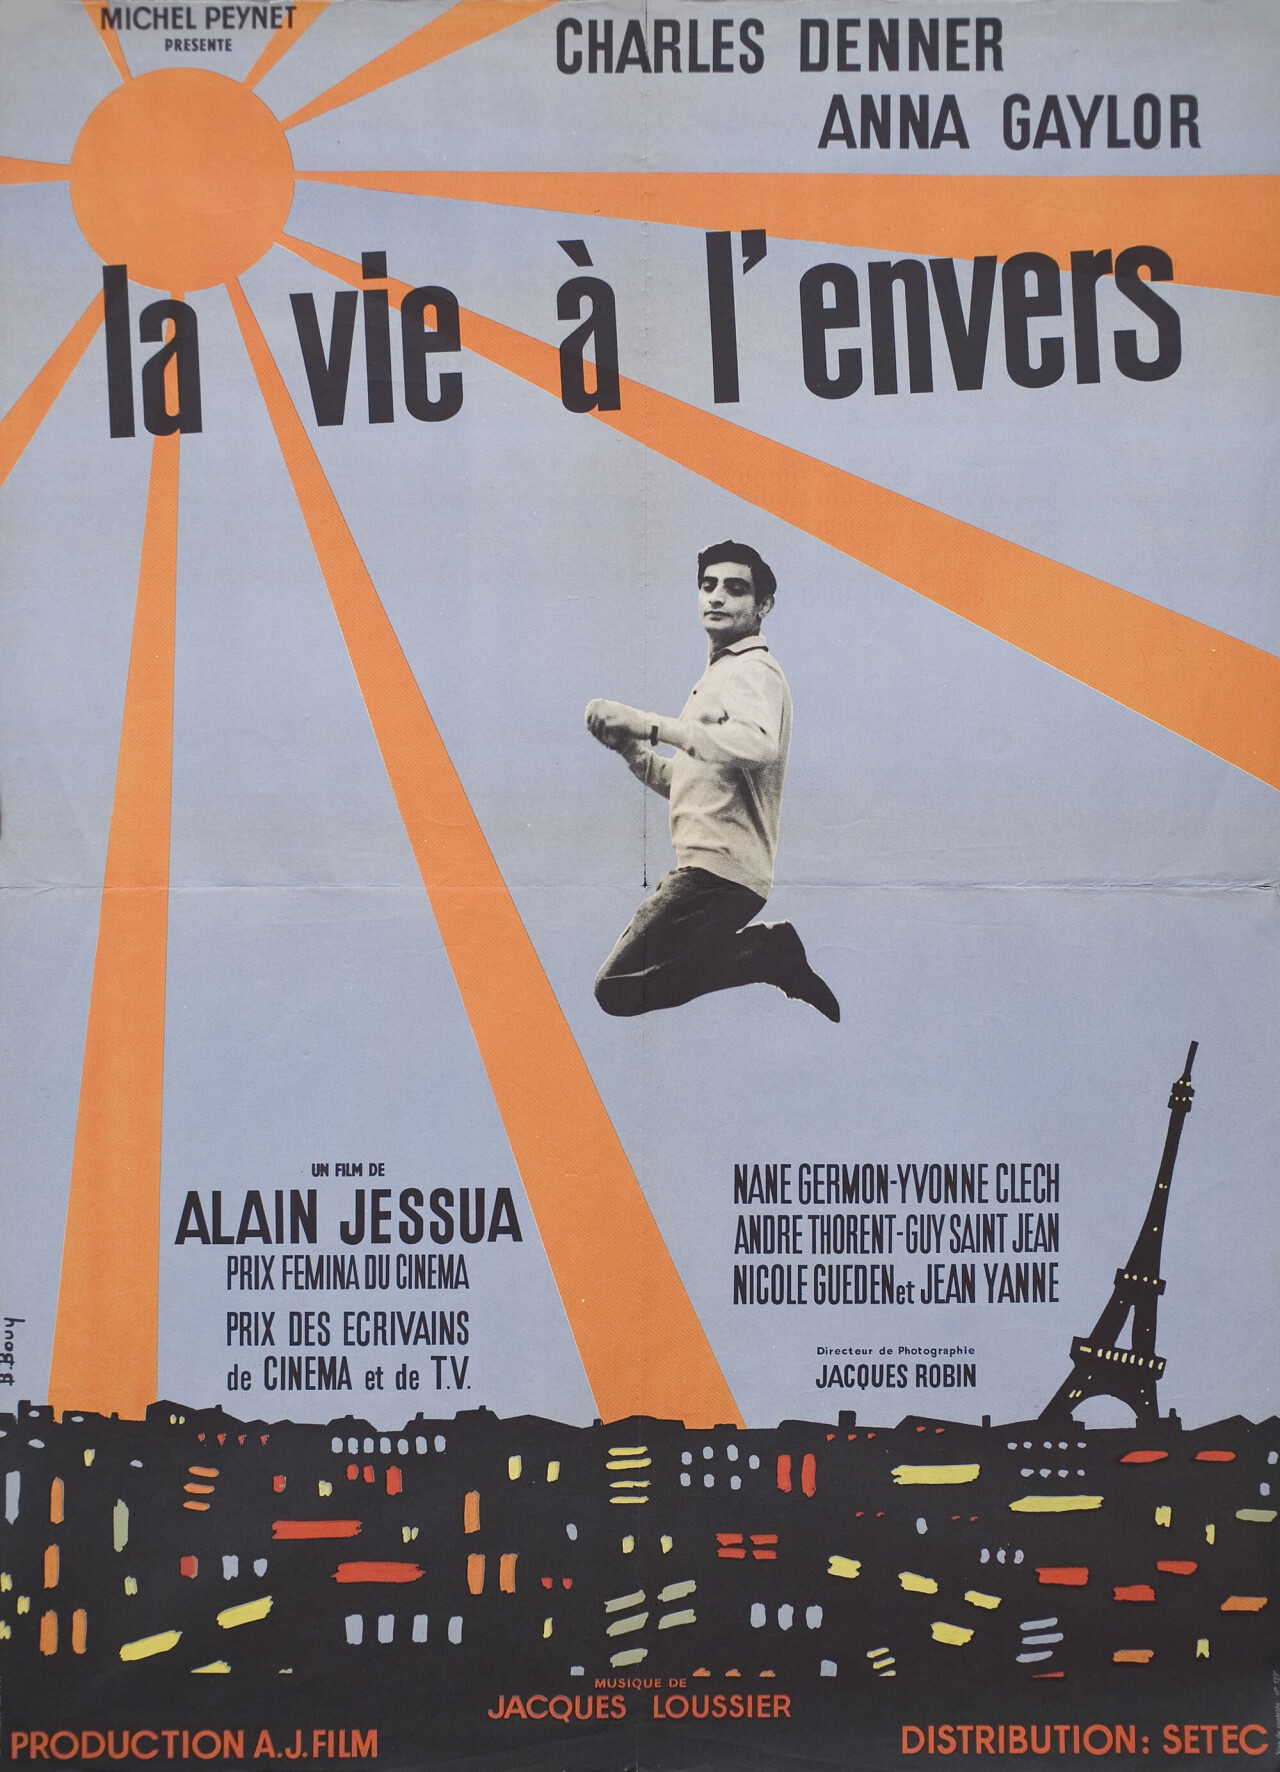 Жизнь наизнанку (Life Upside Down, 1964), режиссёр Ален Джессуа, французский постер к фильму, автор Буй (графический дизайн, 1964 год)